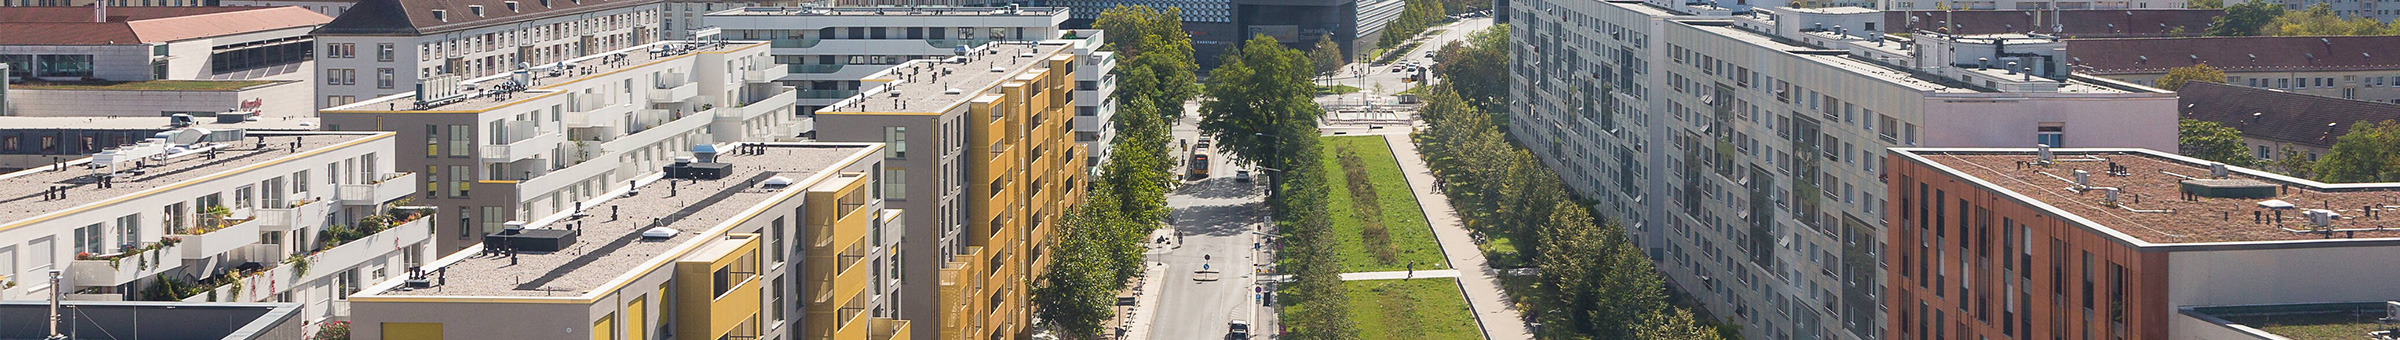 Auf dem Bild ist ein Abschnitt des neu gestalteten Promenadenringes zu sehen. Der Blick geht in Richtung Süden.